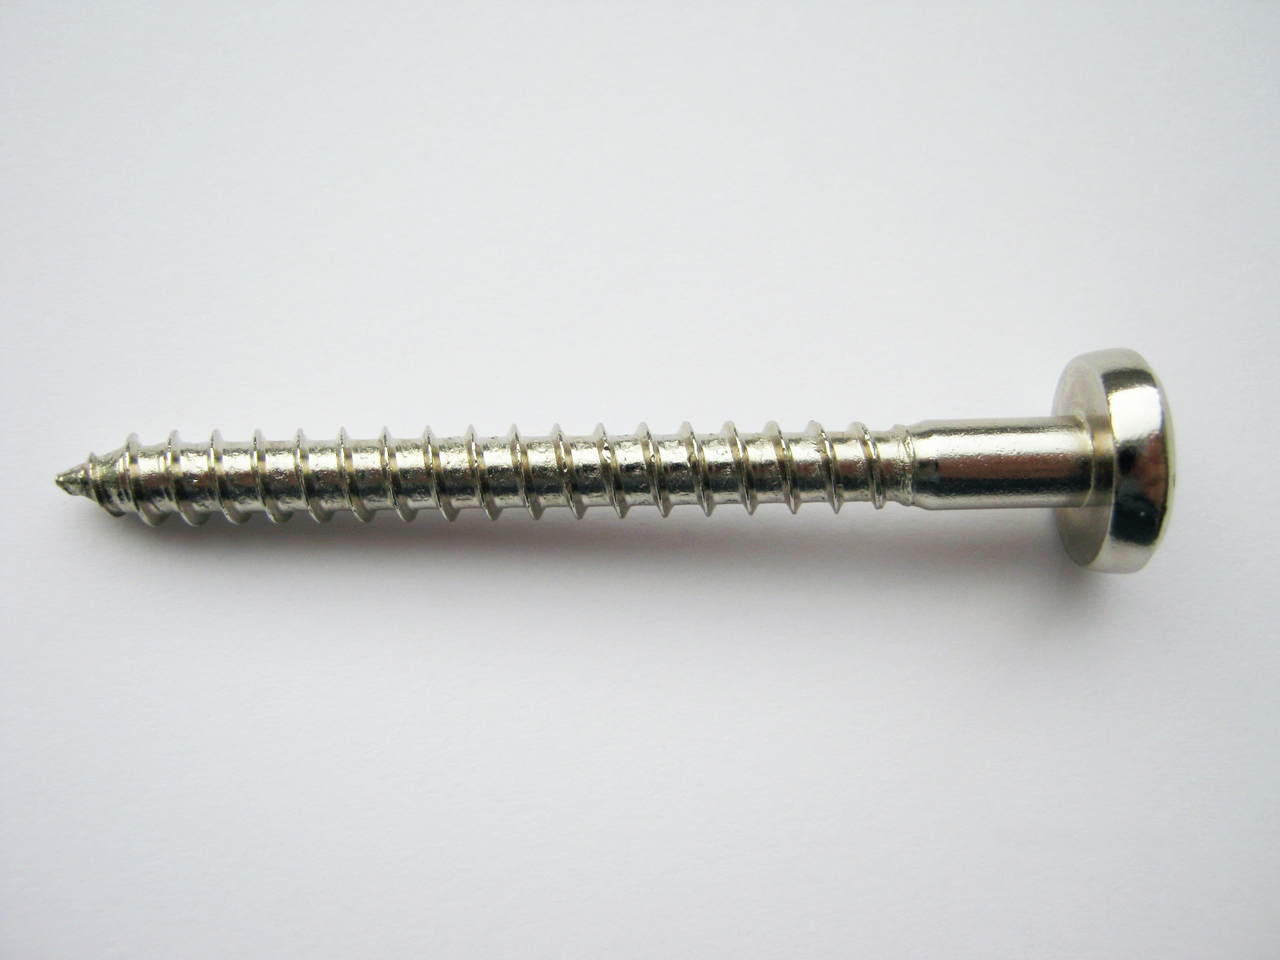  Special screws, galvanised